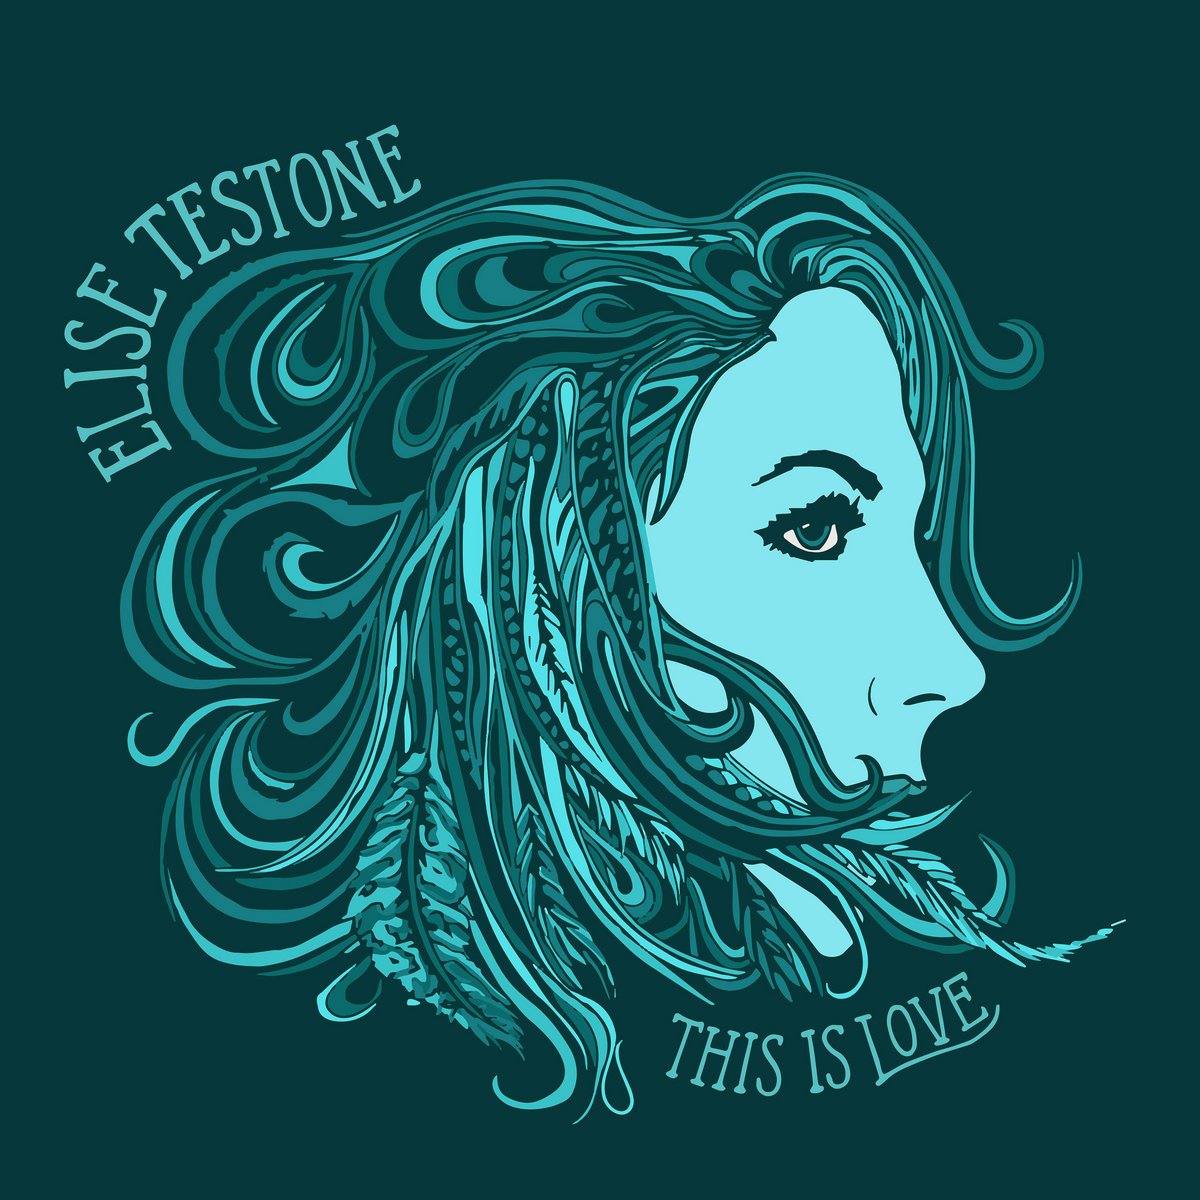 Elise Testone "Is This Love" - Guitars